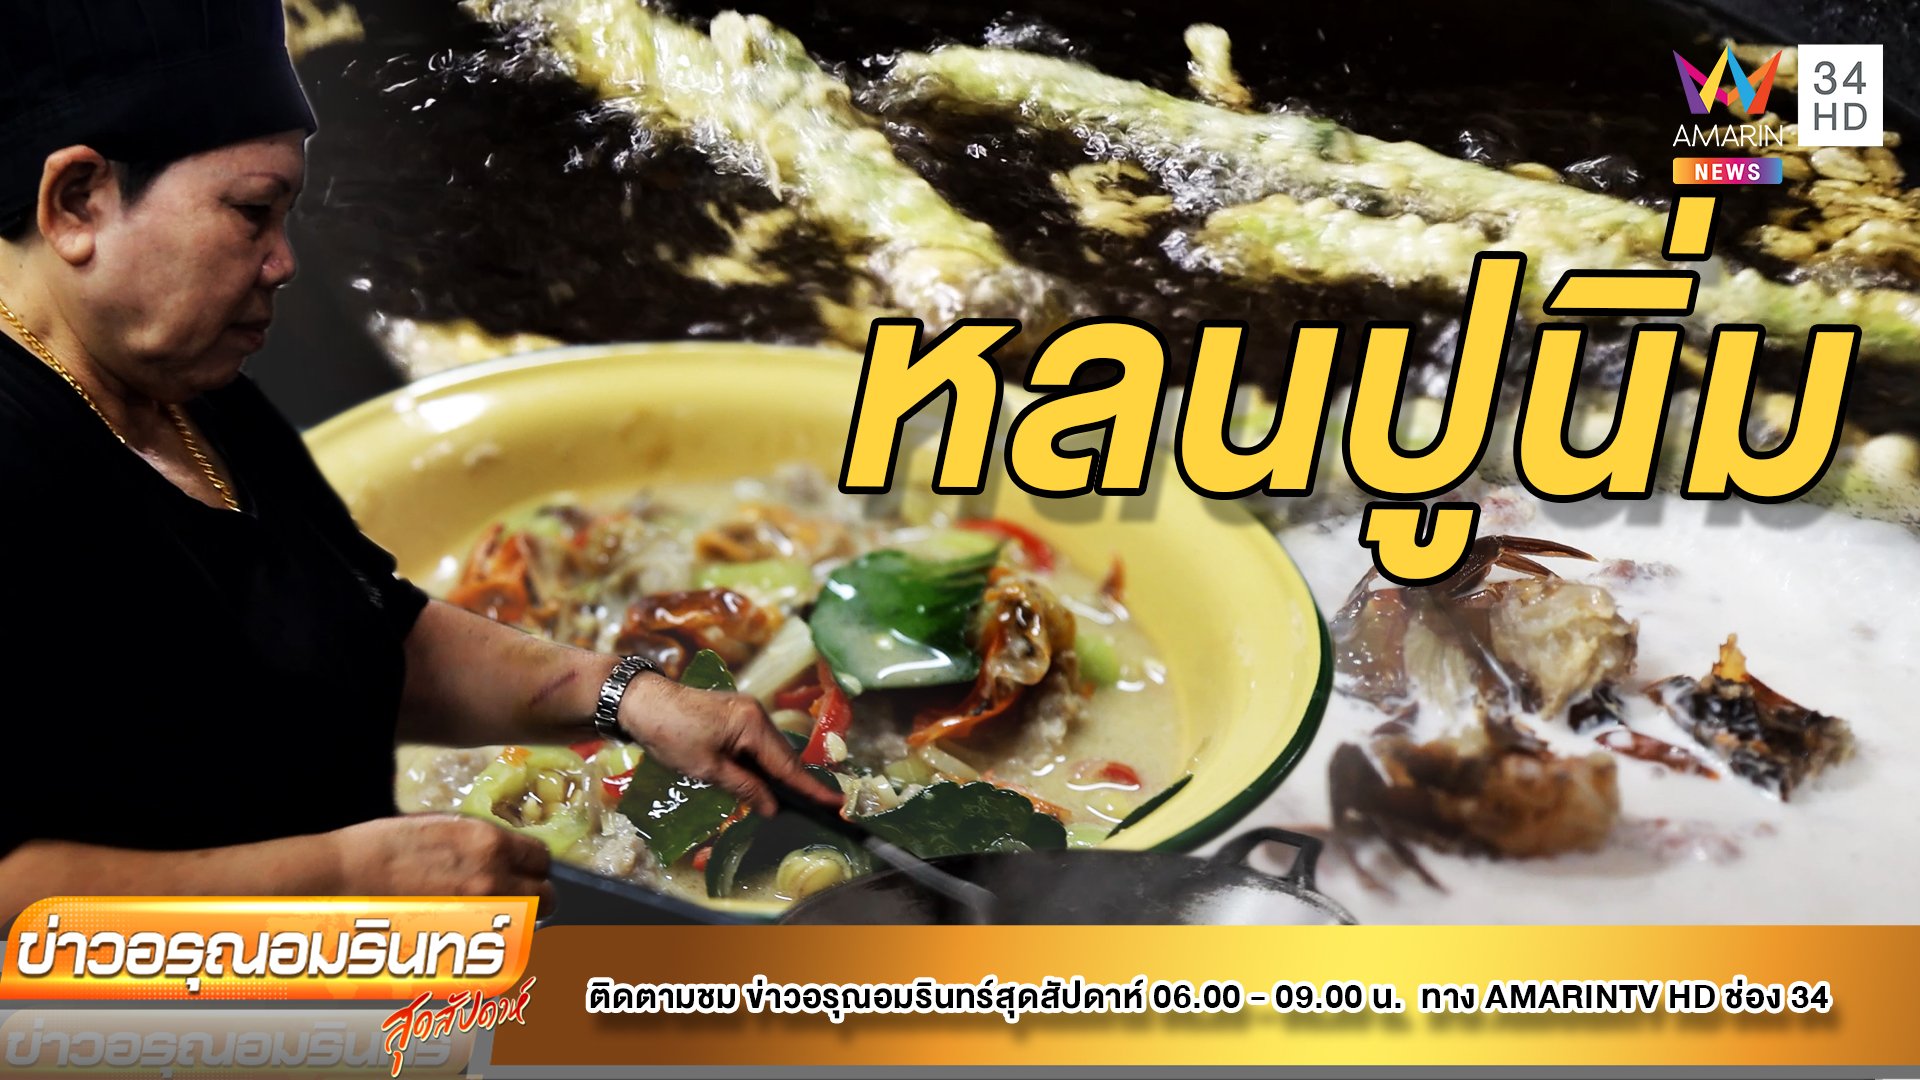 พาชิม! อาหารพื้นบ้านรสเด็ด “ร้านบ้านตาเกลือ” เกาะช้าง | ข่าวอรุณอมรินทร์ | 20 ส.ค. 65 | AMARIN TVHD34